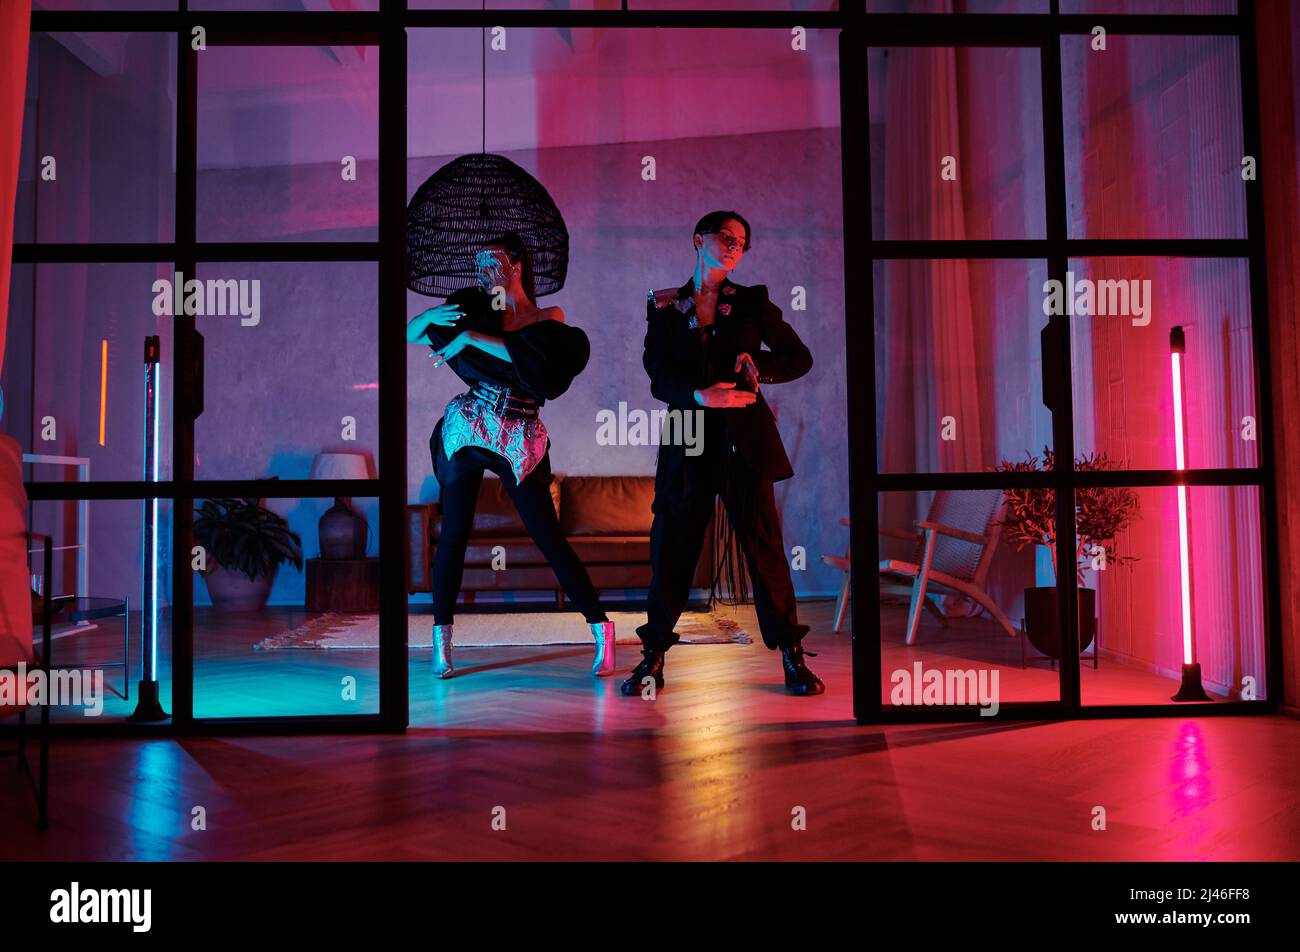 Zwei dynamische Teenager in schickem Gewand, die im Loft-Studio, in der Wohnung oder im Nachtclub mit pinken und blauen Neonlichtern modischen Tanz aufführen Stockfoto